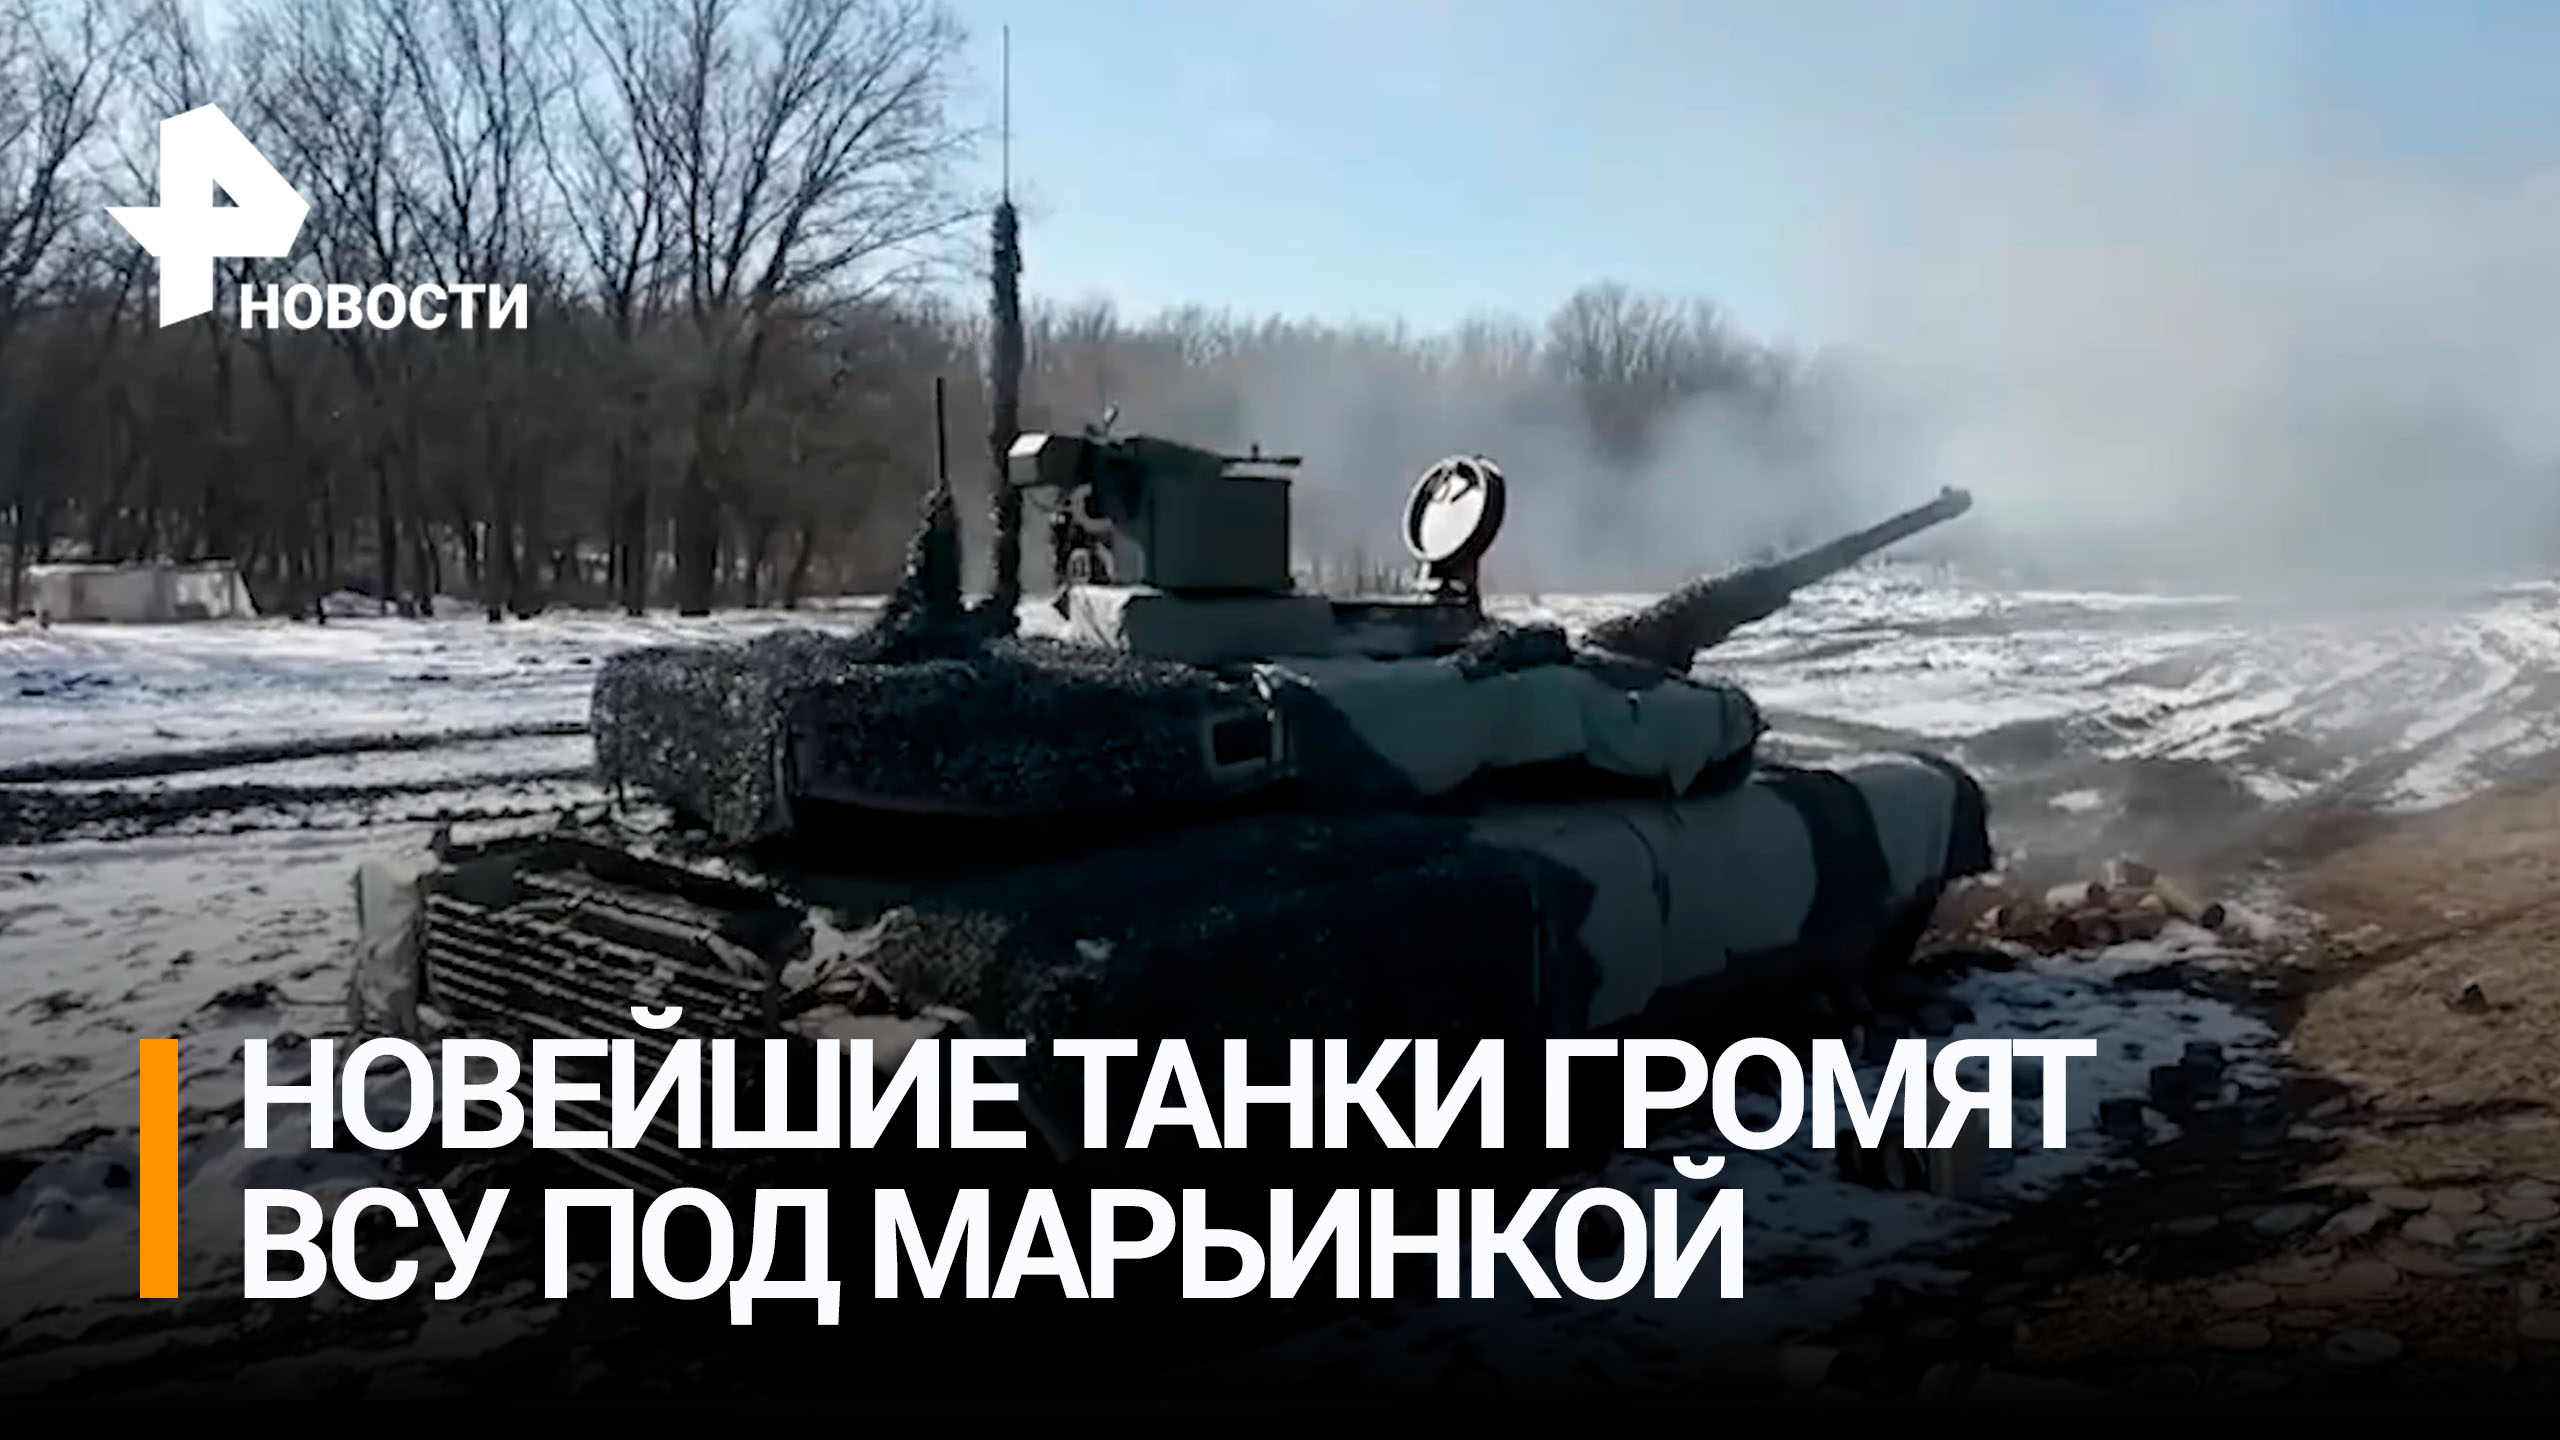 Экипажи танков Т-90М "Прорыв" громят позиции ВСУ под Марьинкой / РЕН Новости